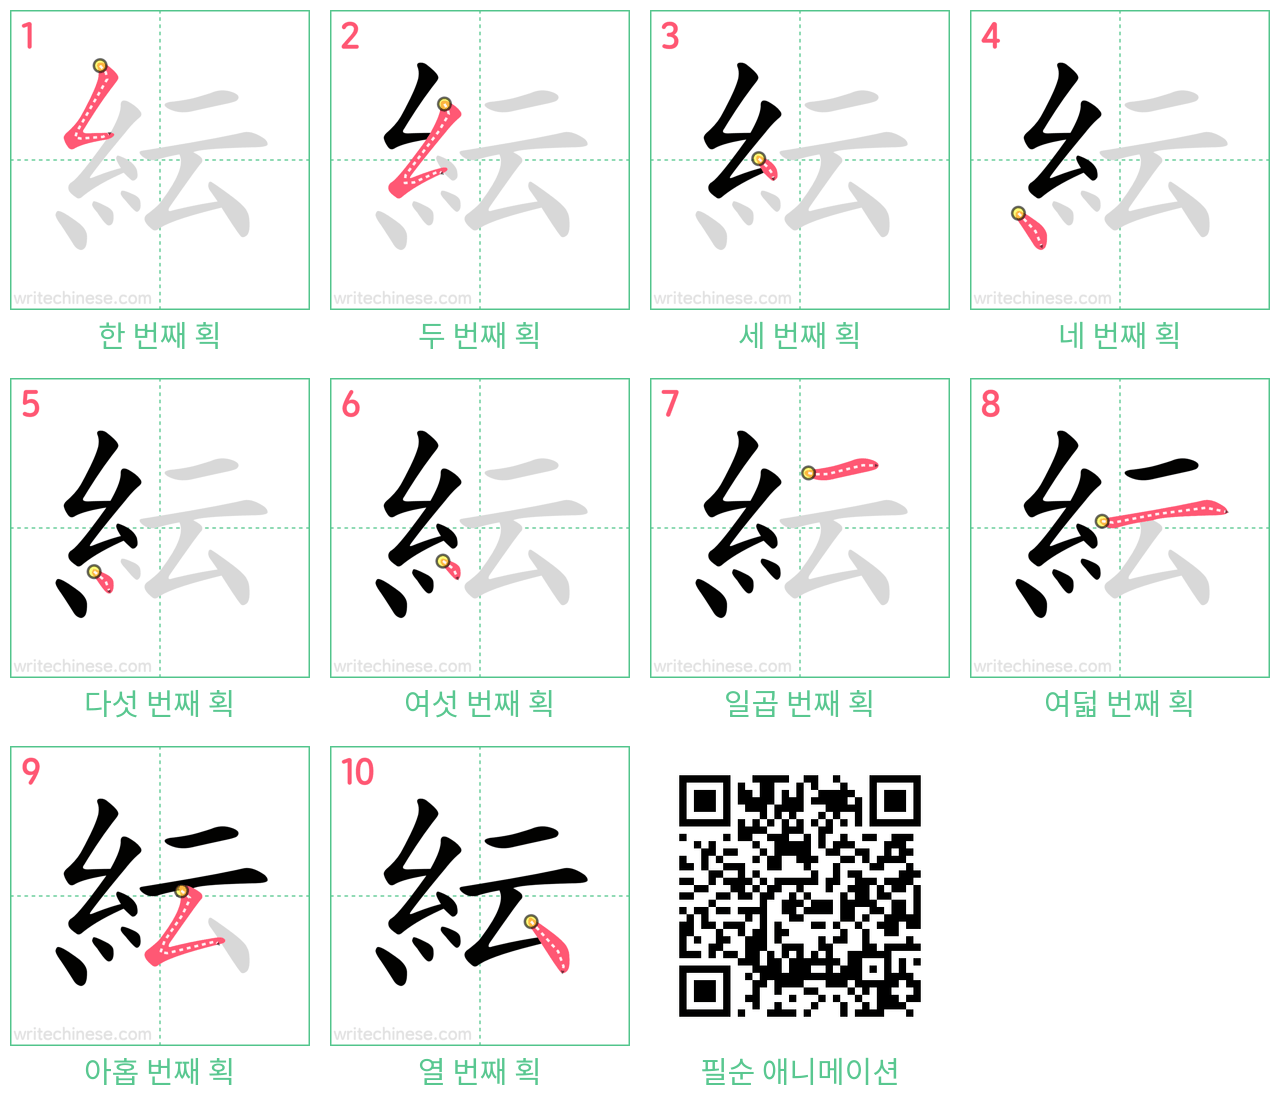 紜 step-by-step stroke order diagrams